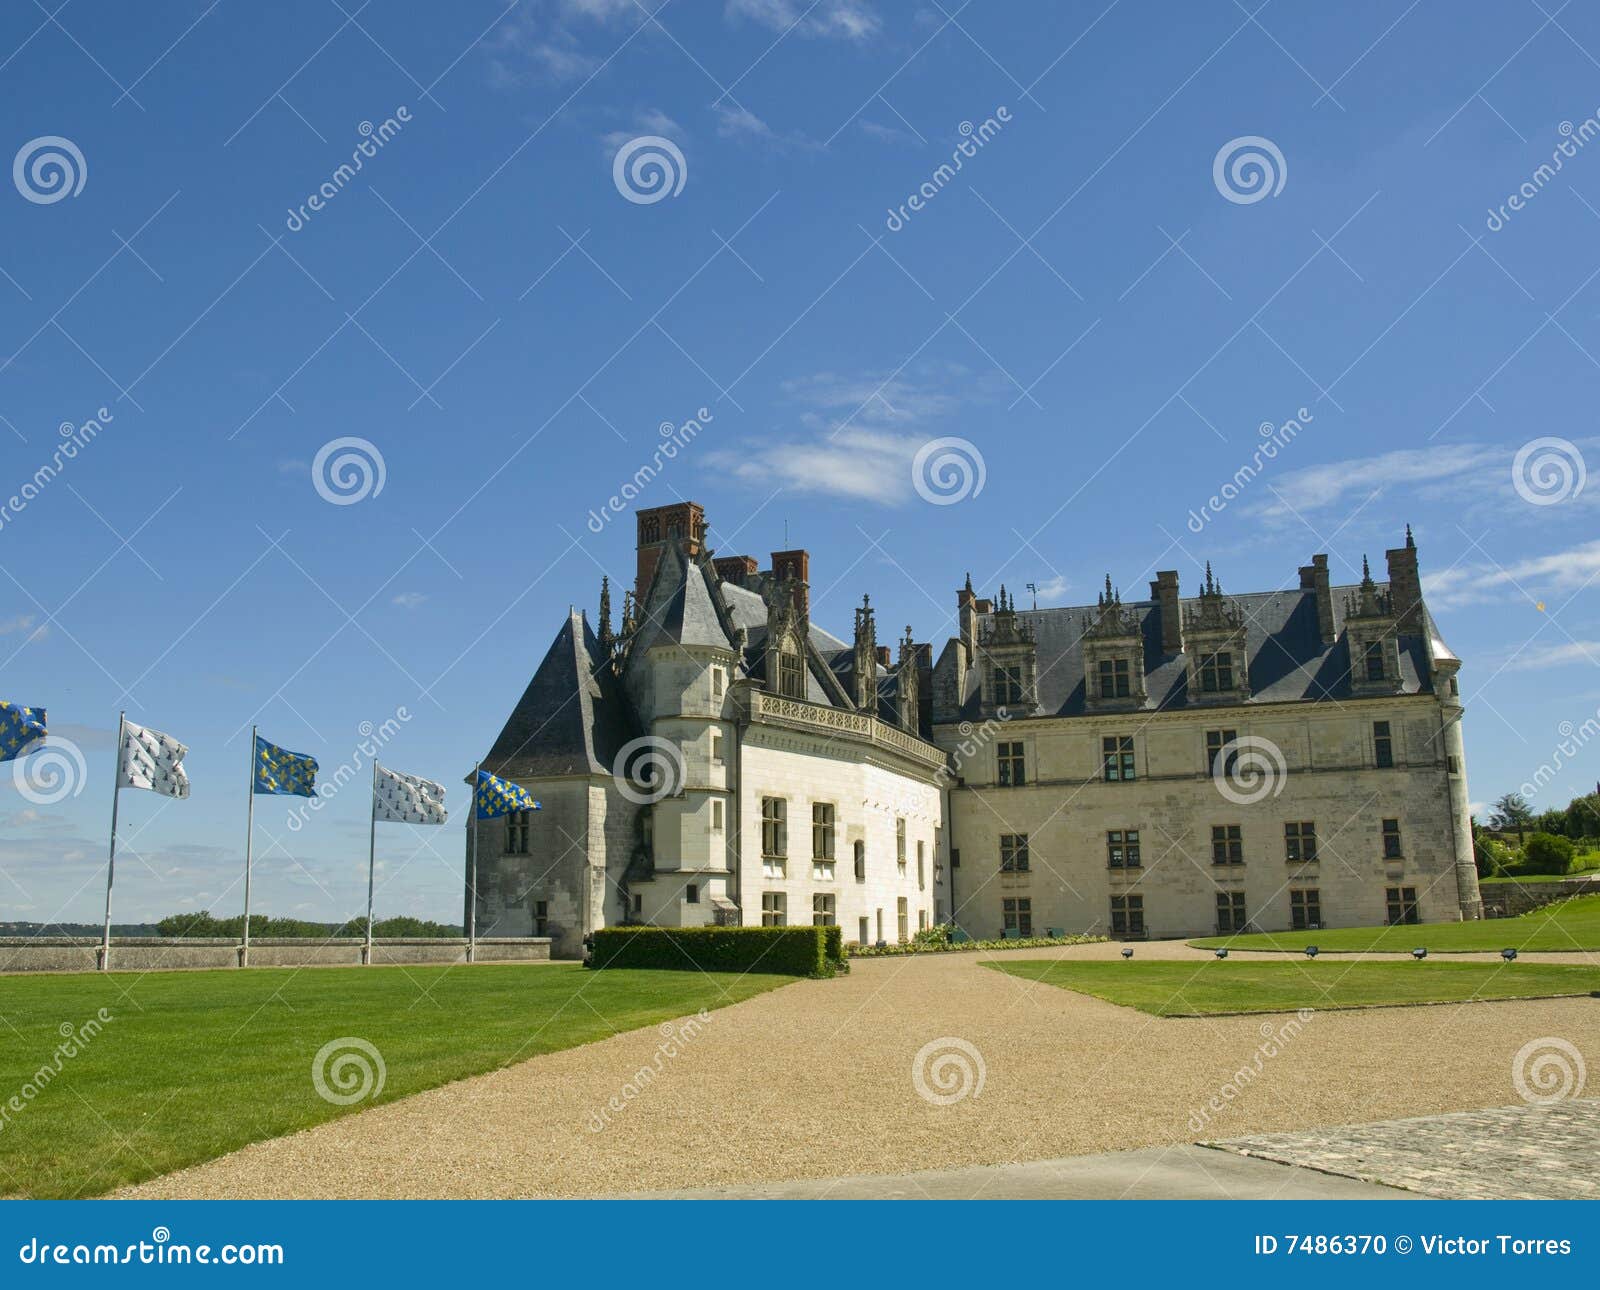 amboise castle